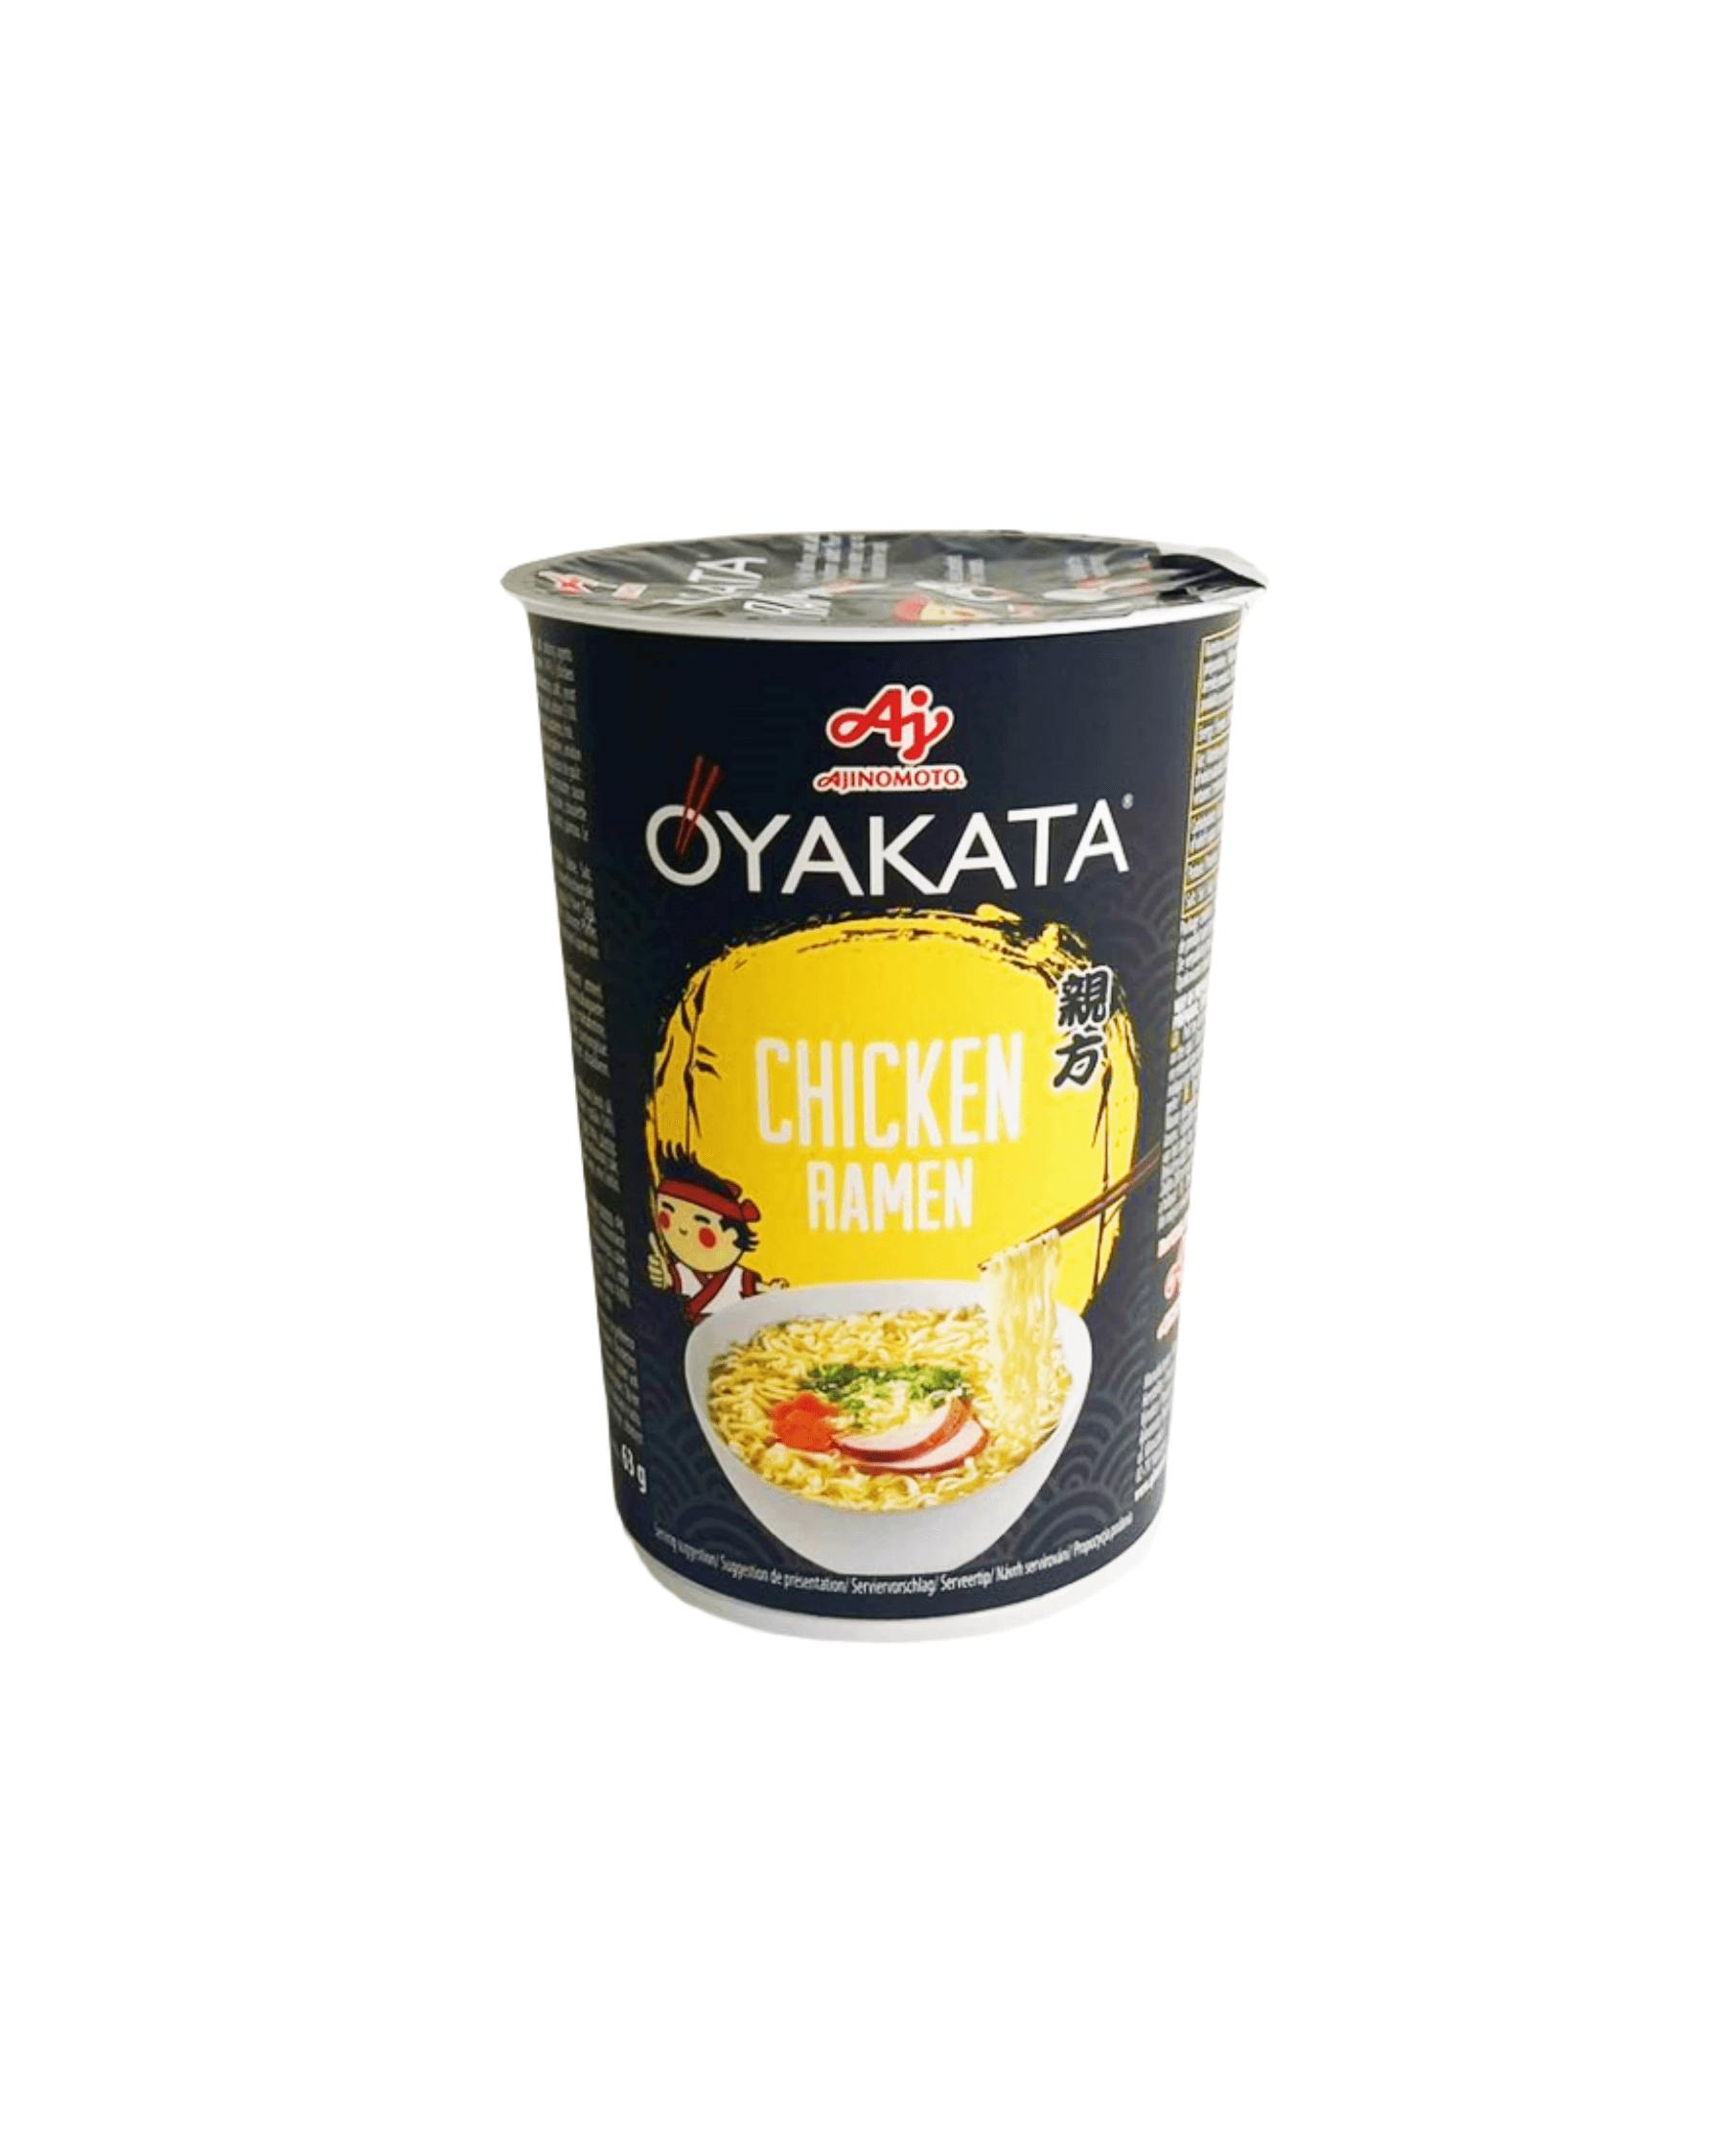 Instant Noodles Cup Chicken Flavour 60g Ajinomoto Oyakata Japan